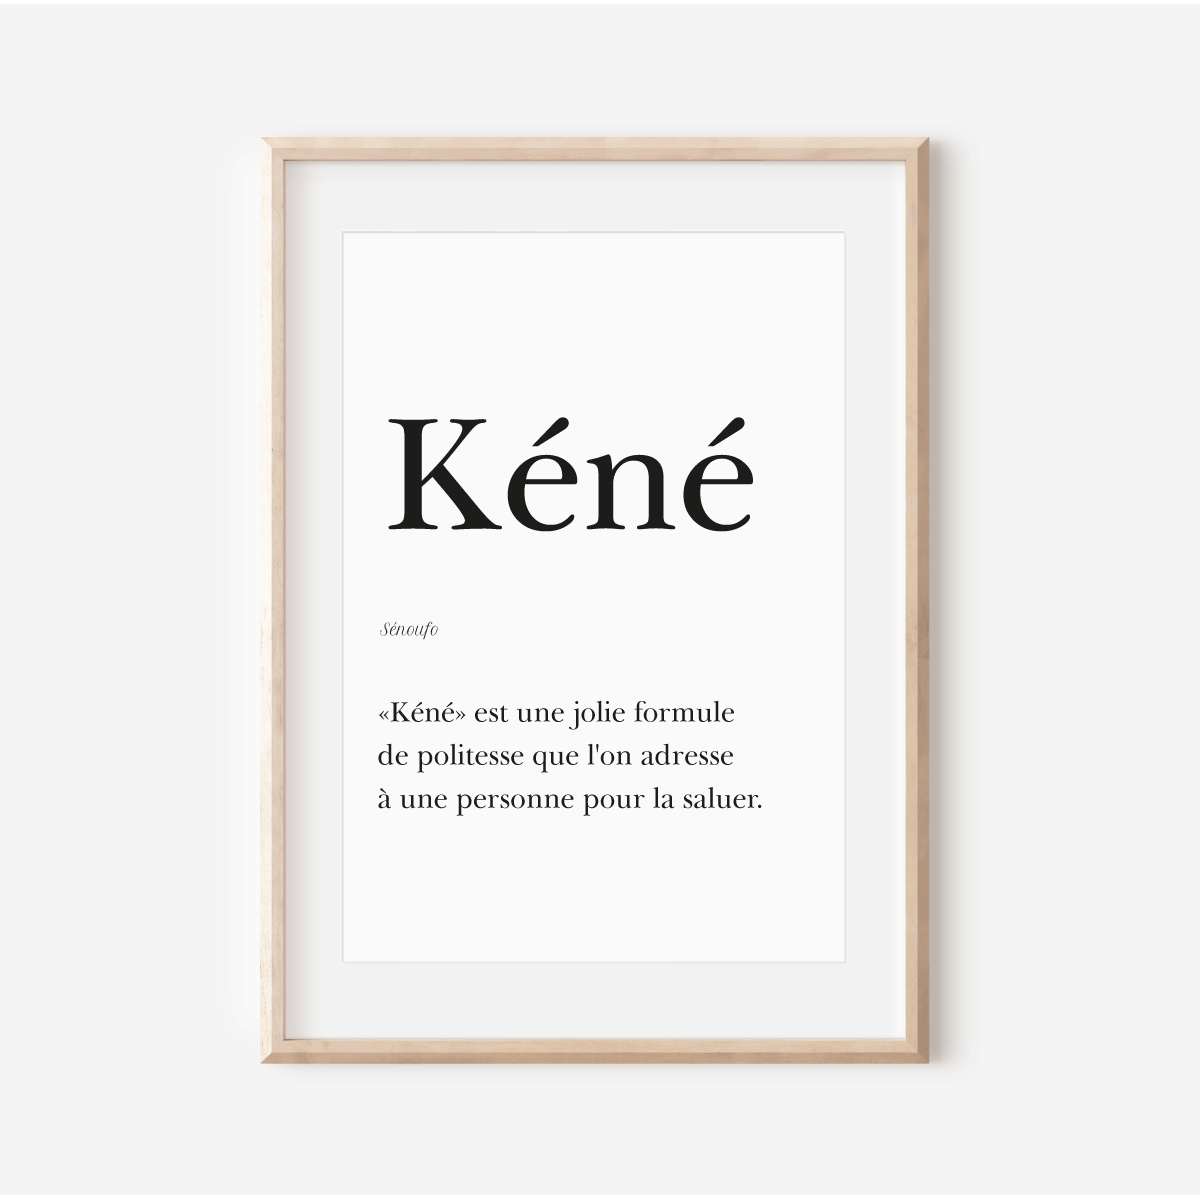 Poster "Kéné" - "Hello" in Sénoufo